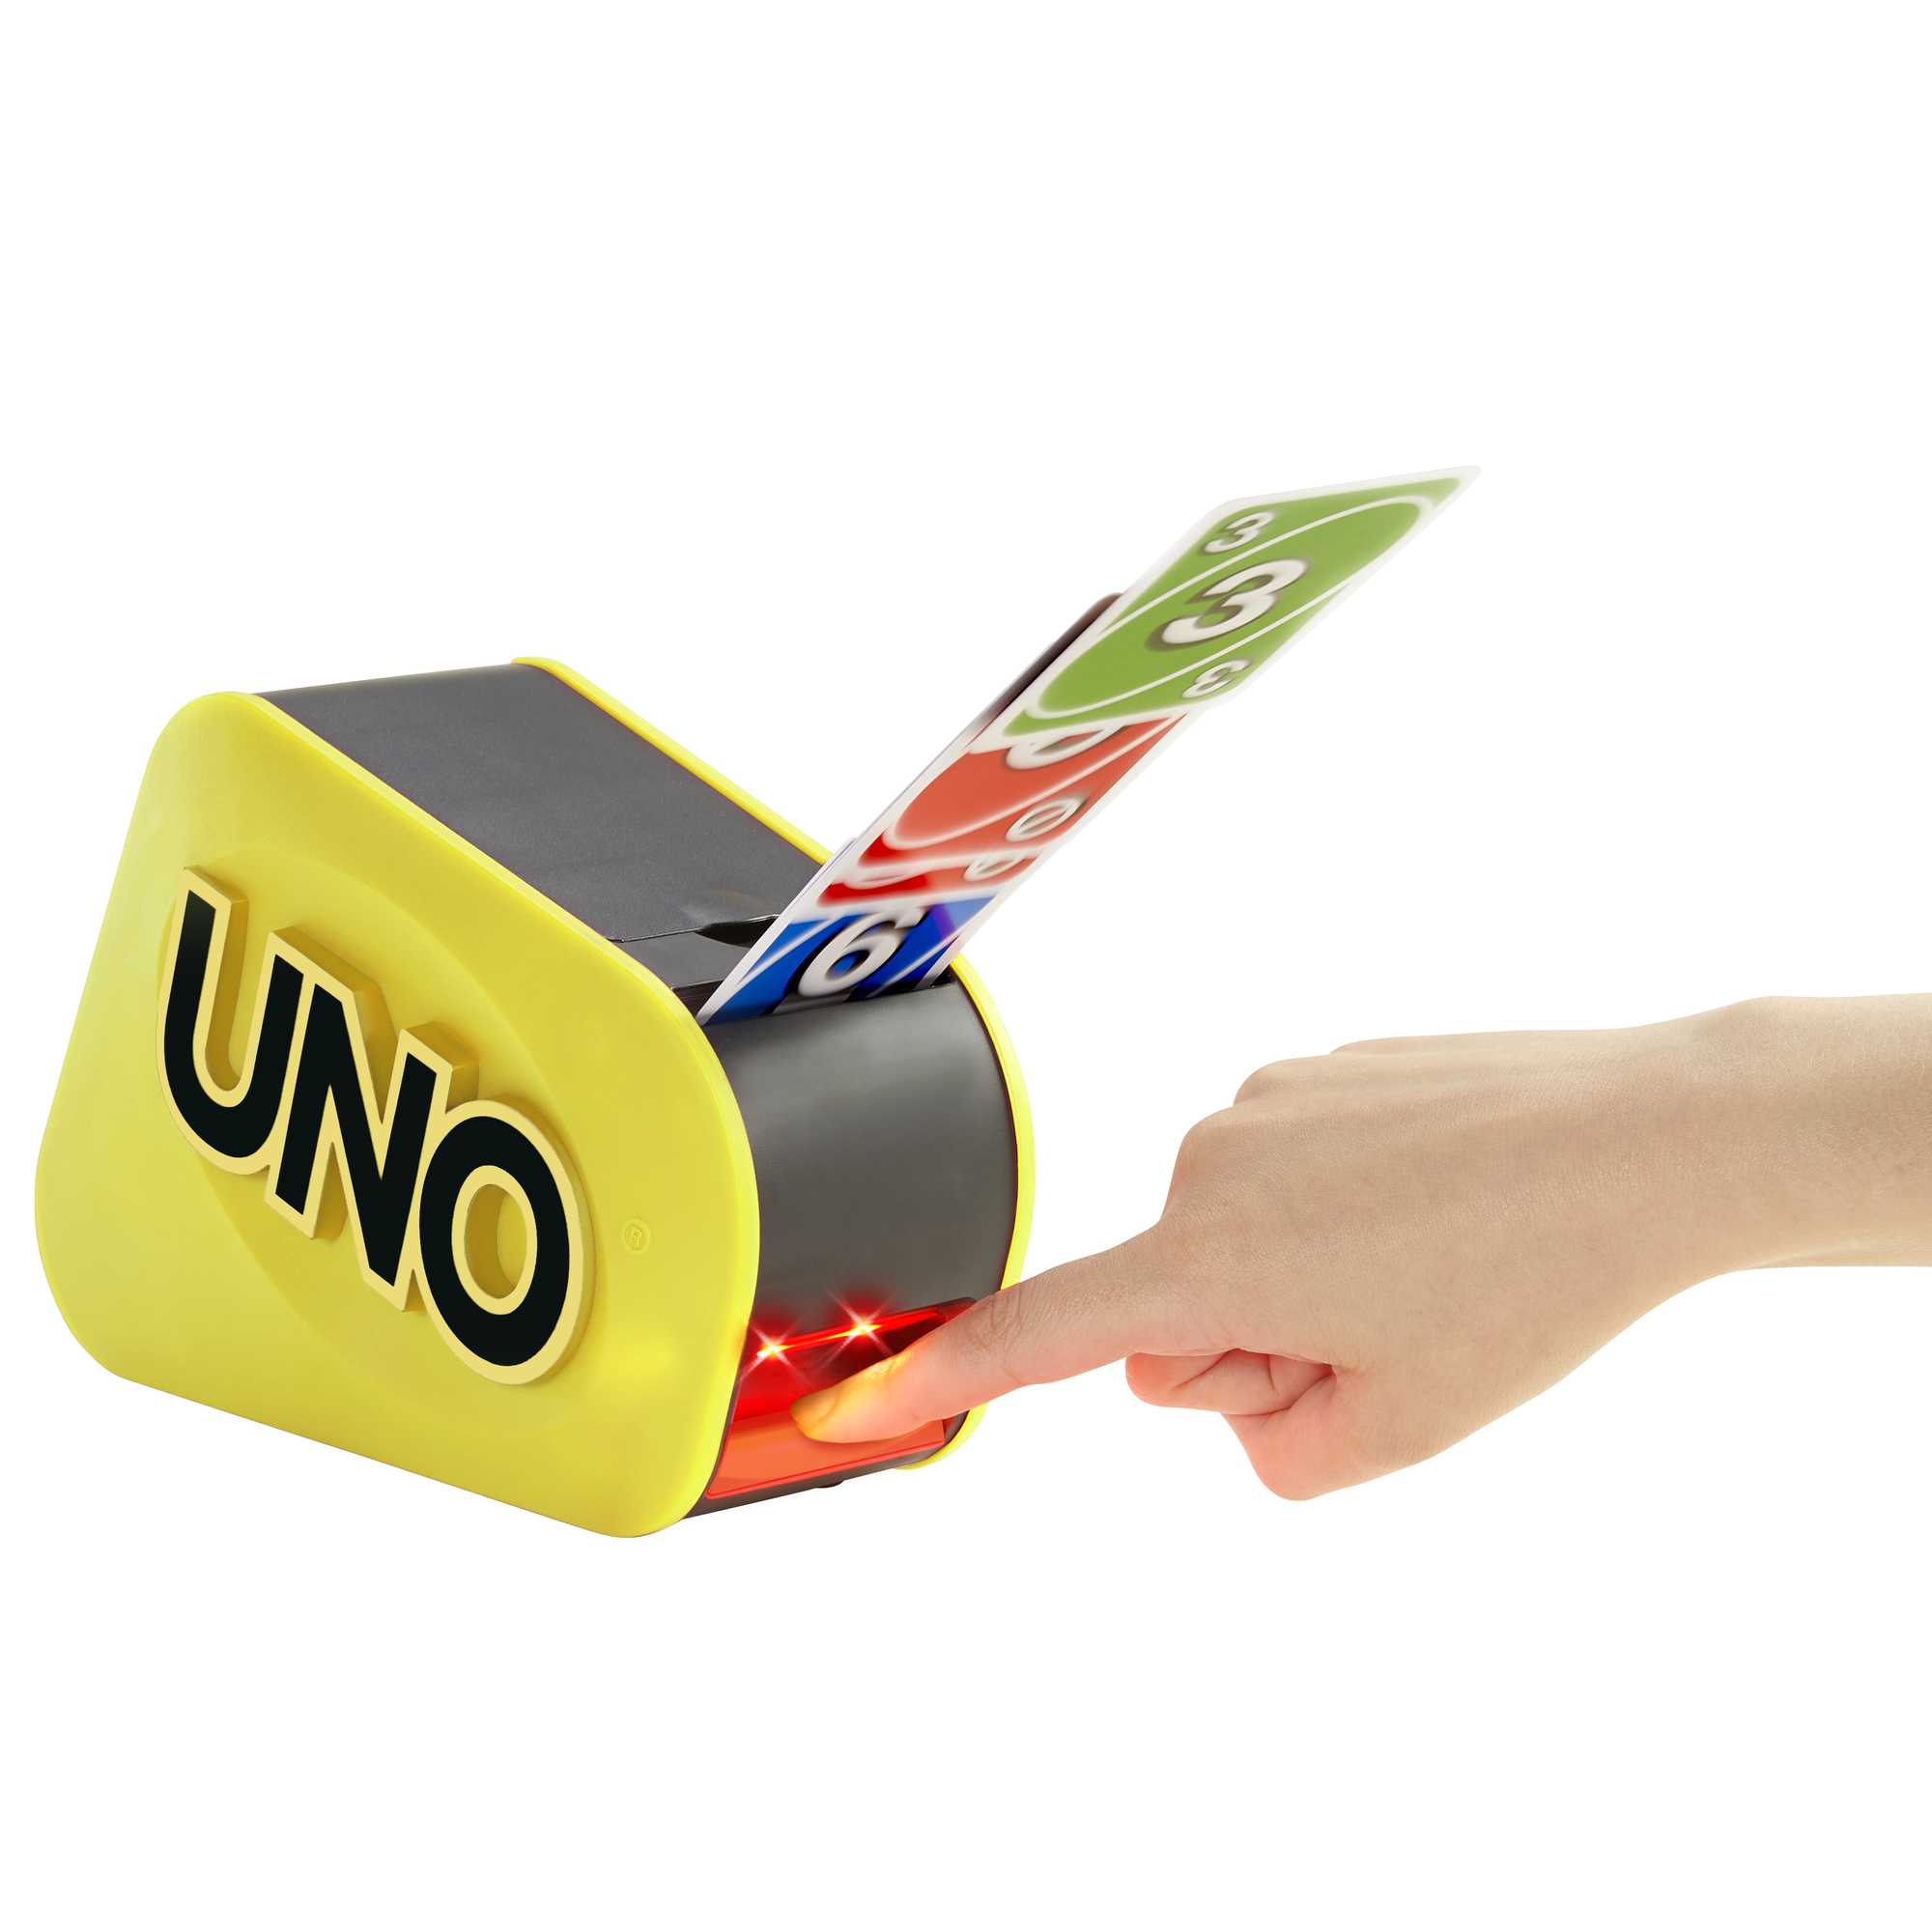 Brinquedo Jogo Uno Attack Eletronico Com Cards Mattel W5775 em